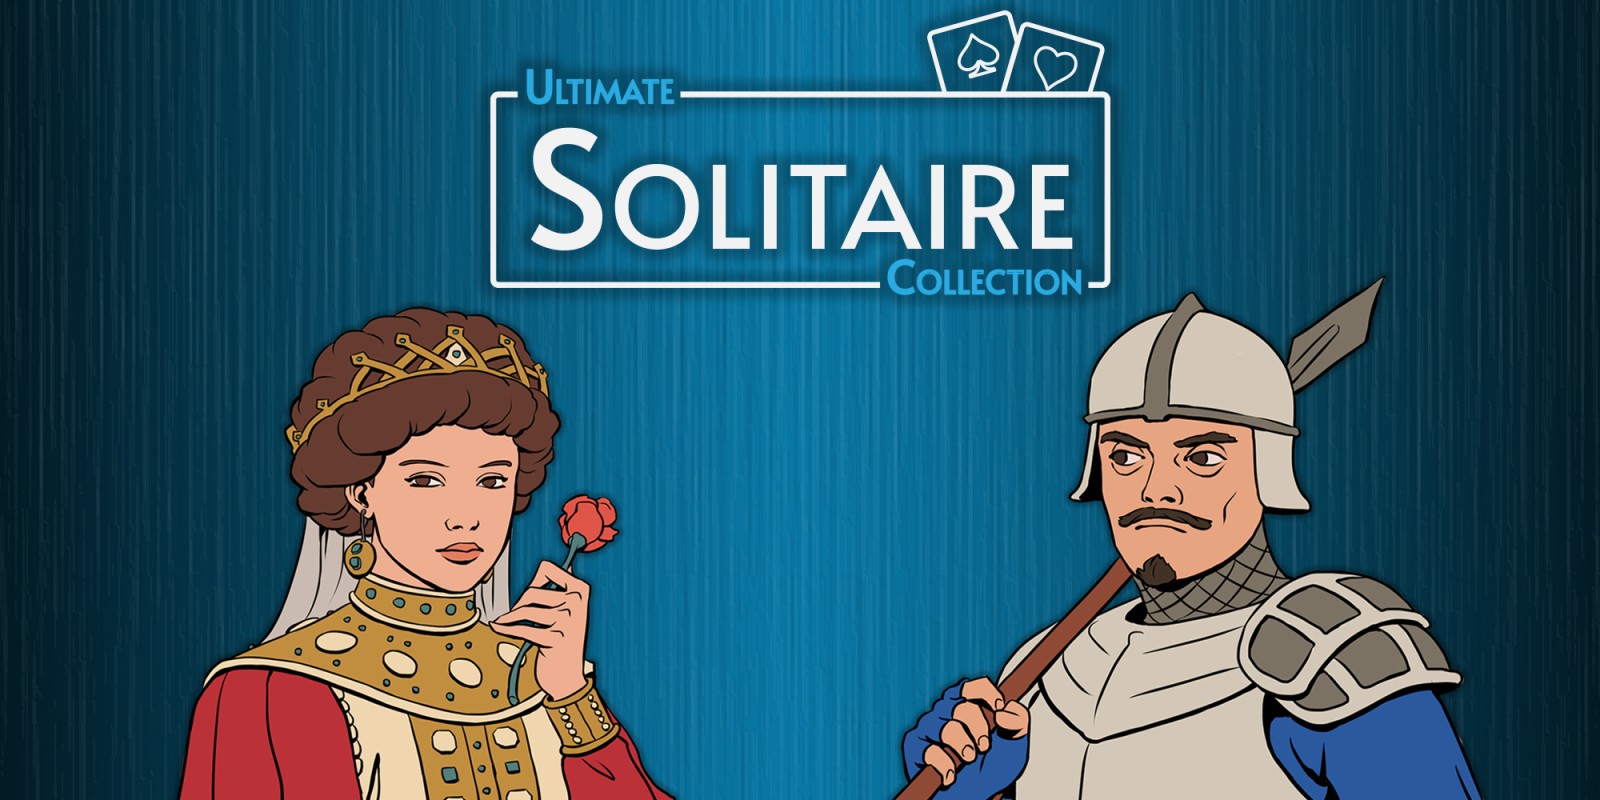 World Of Solitaire, Aplicações de download da Nintendo Switch, Jogos